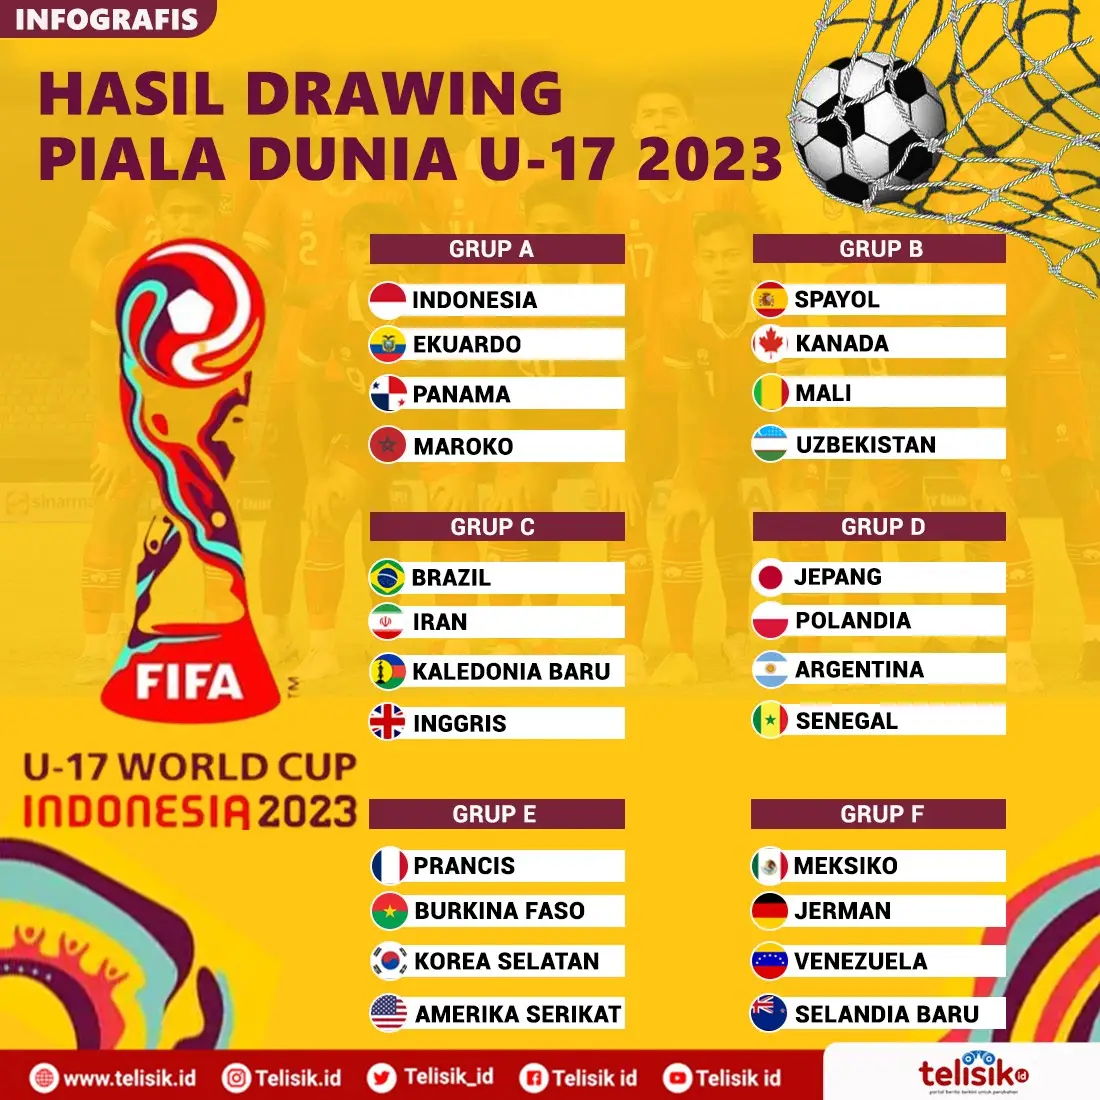 Infografis: Pembagian Grup dan Jadwal Lengkap Piala Dunia U-17 2023 di Indonesia